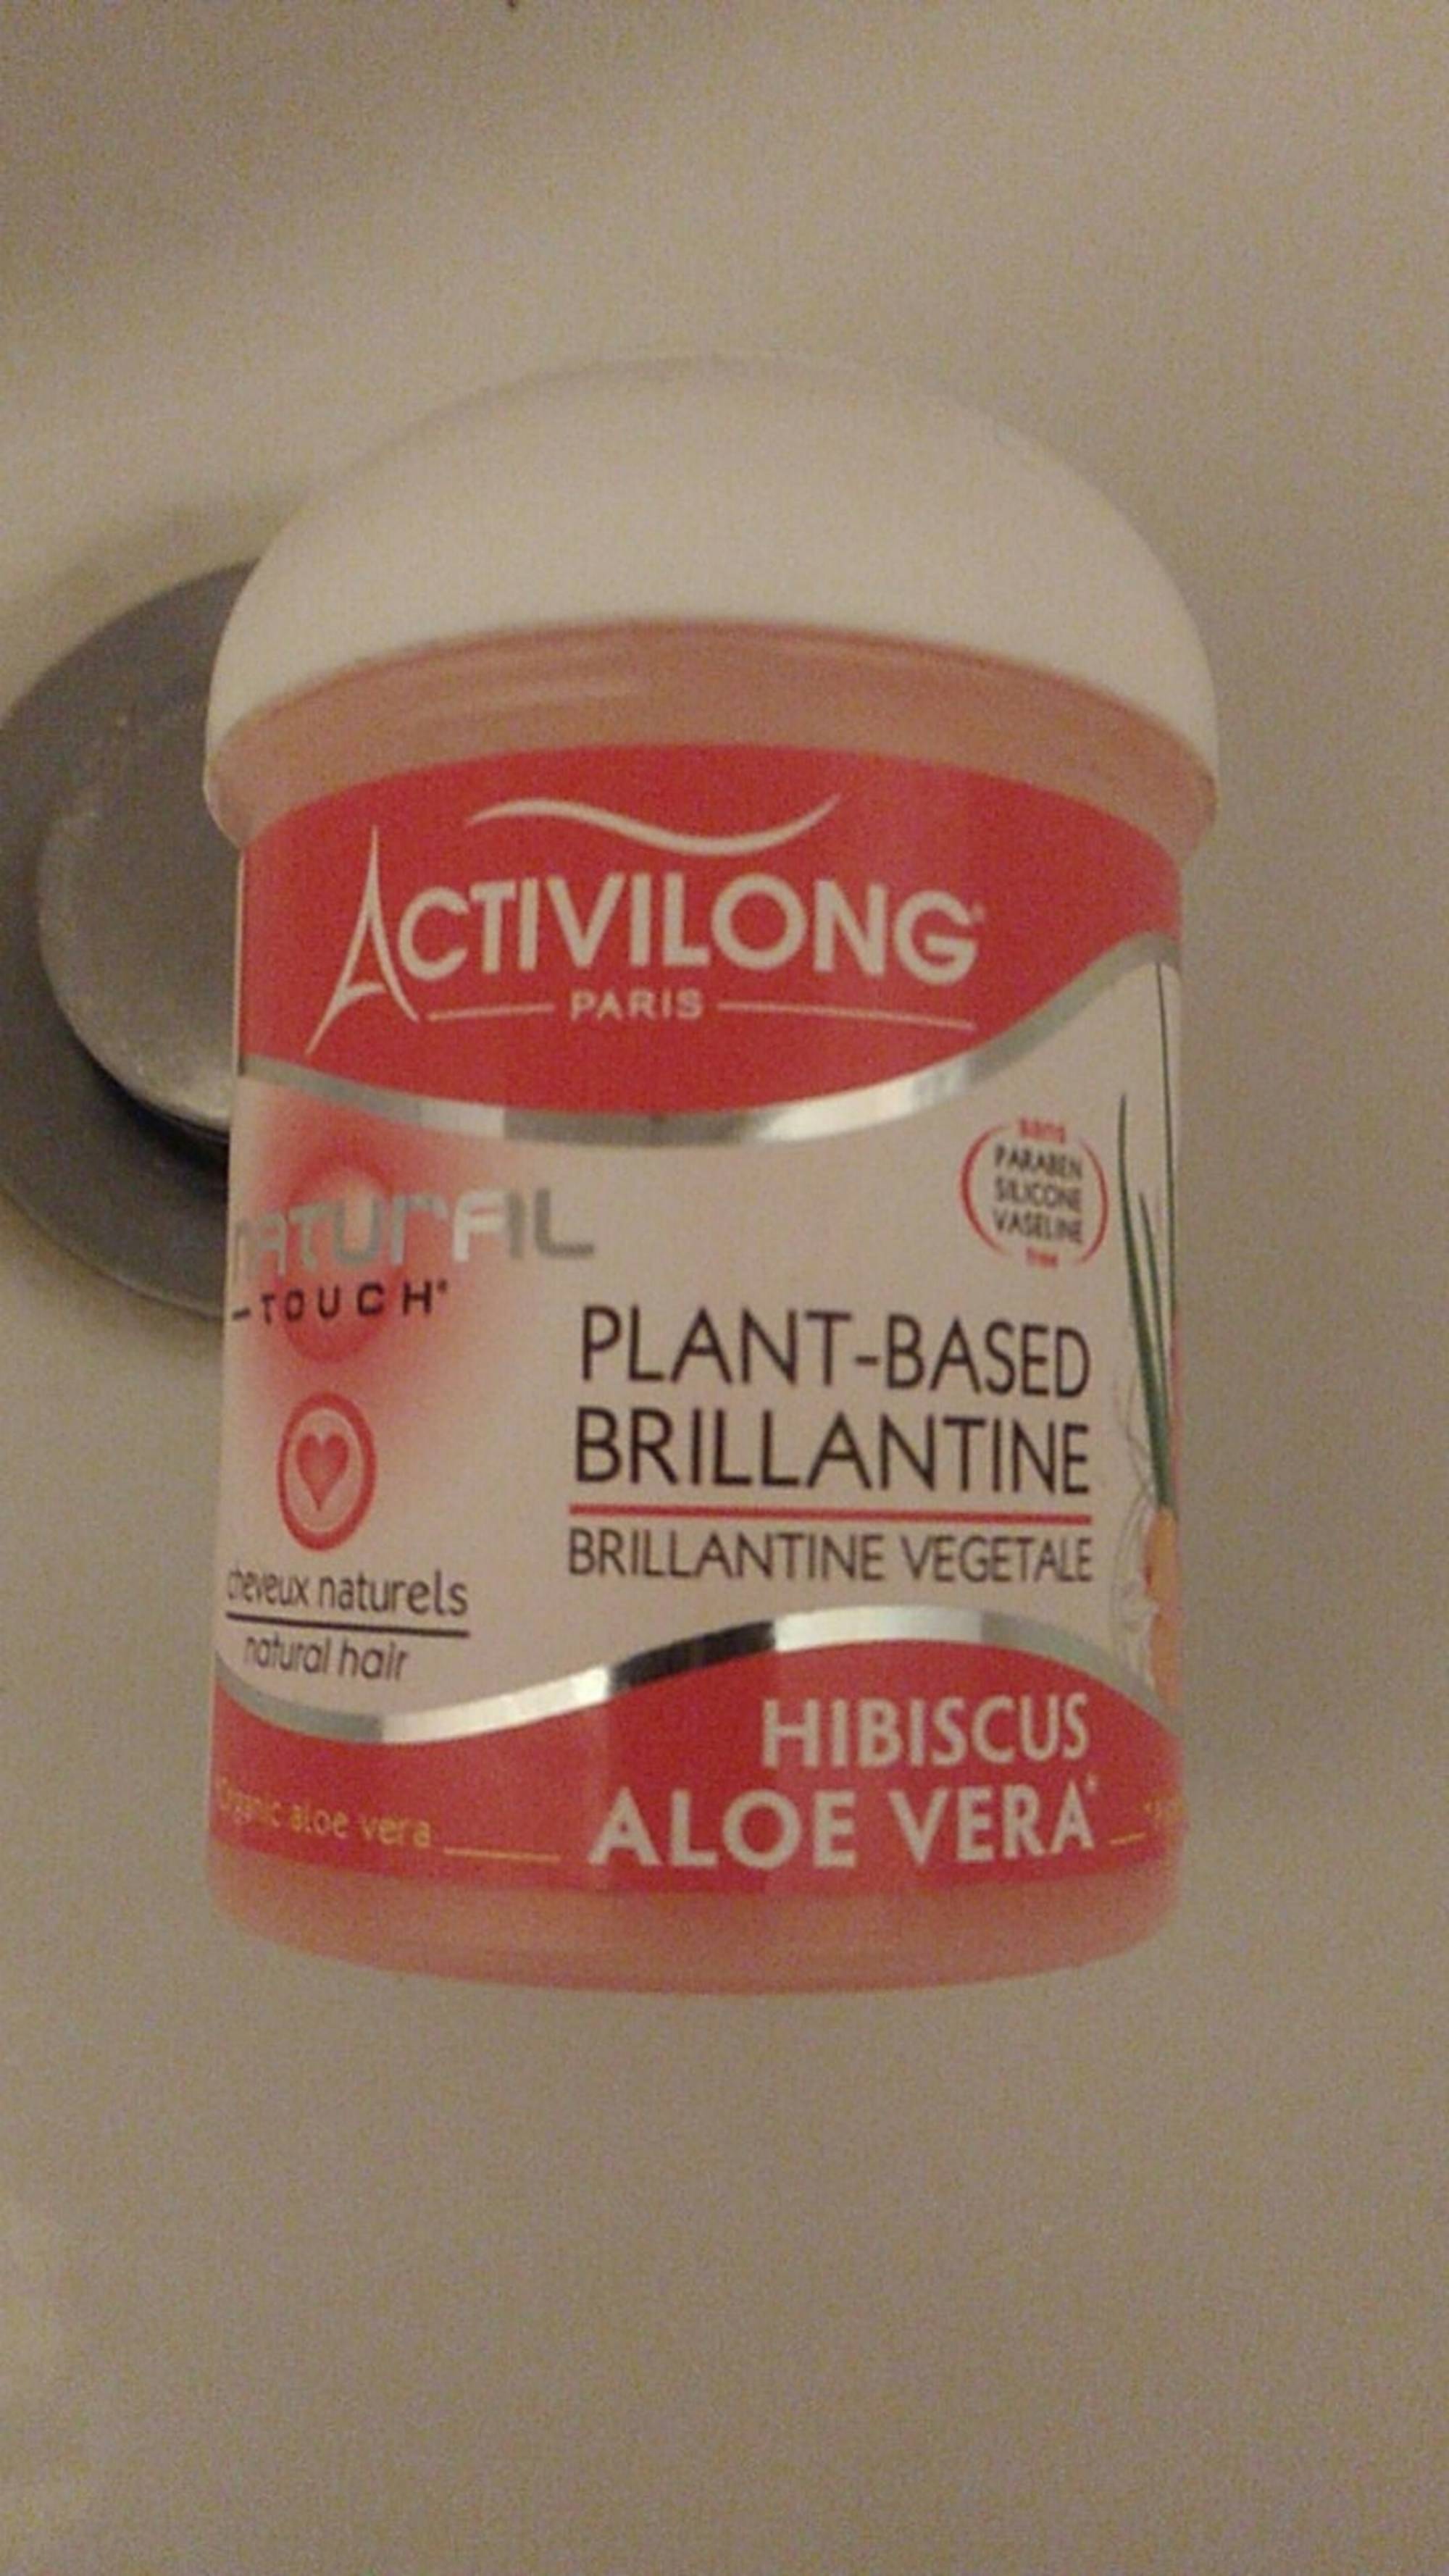 ACTIVILONG - Natural touch - Brillantine végétale hibiscus aloé vera